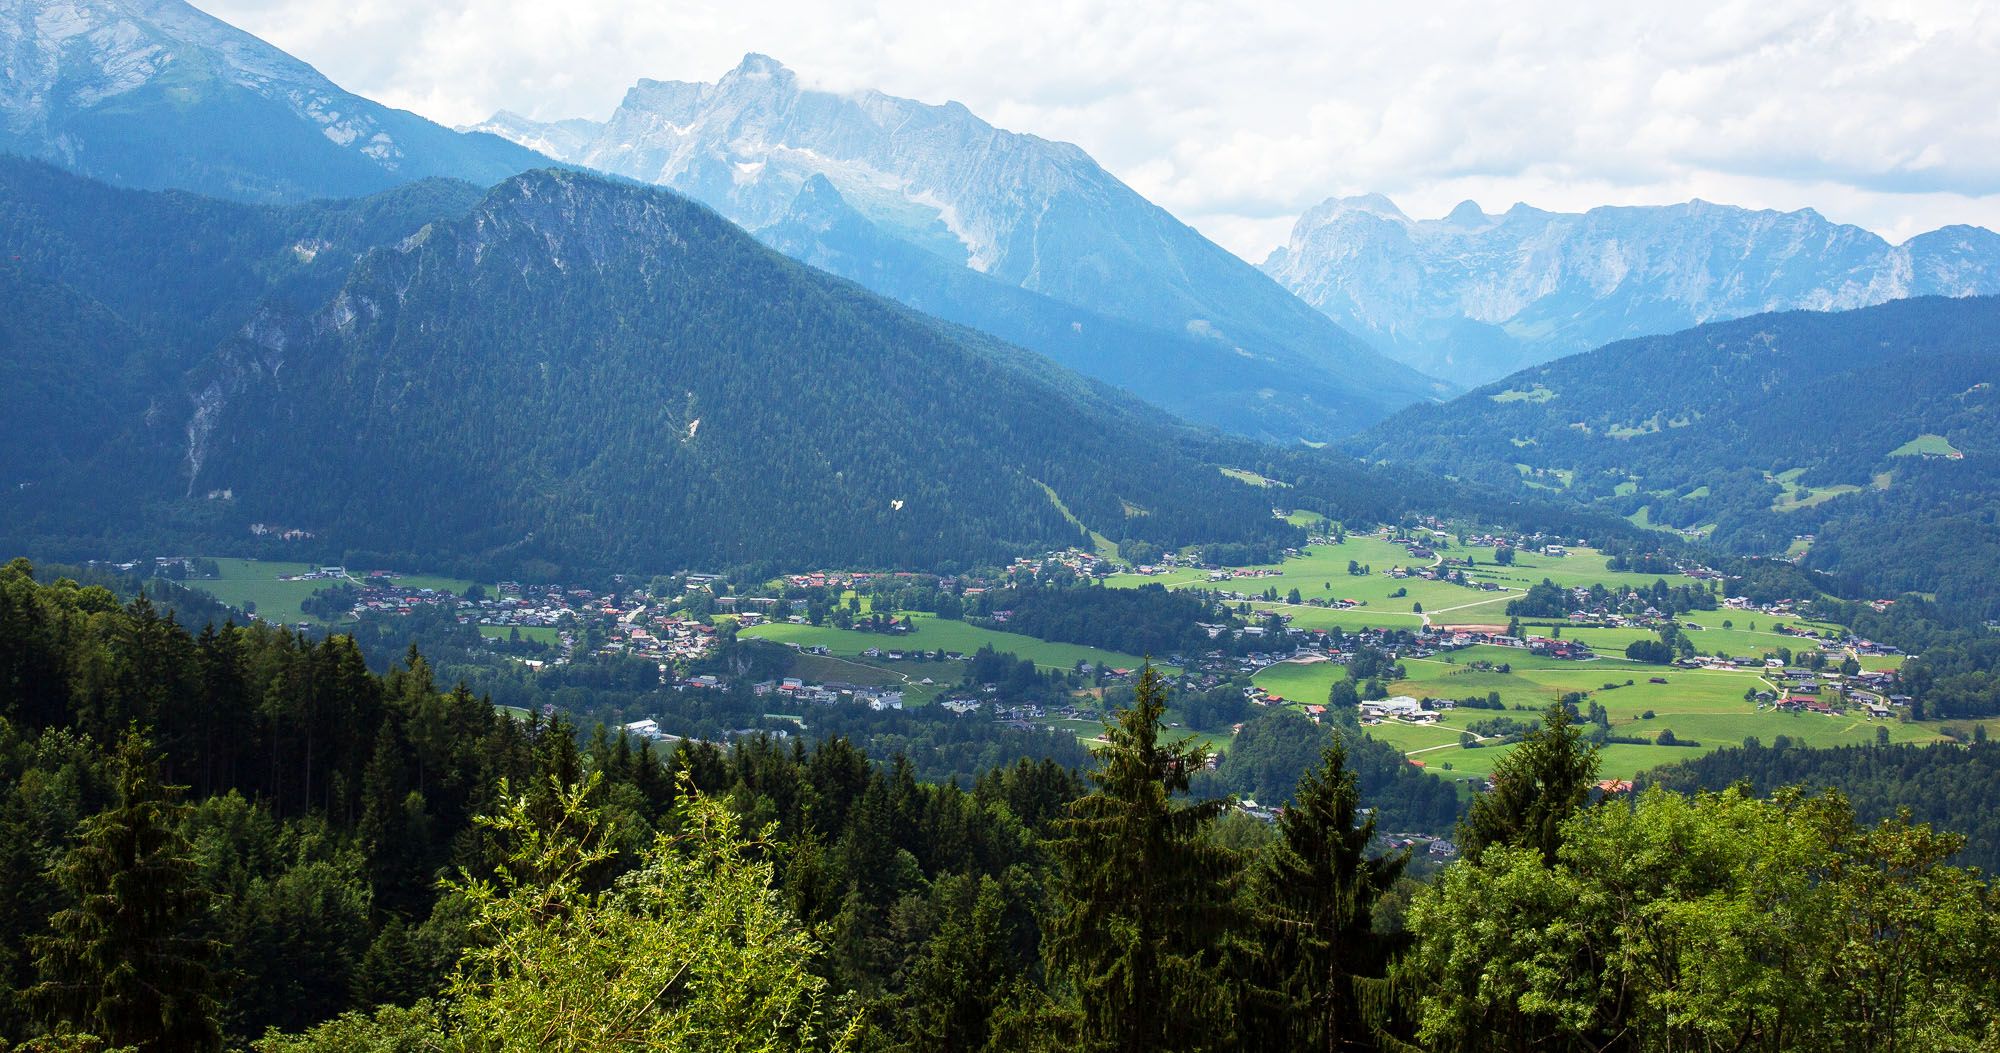 In Berchtesgaden